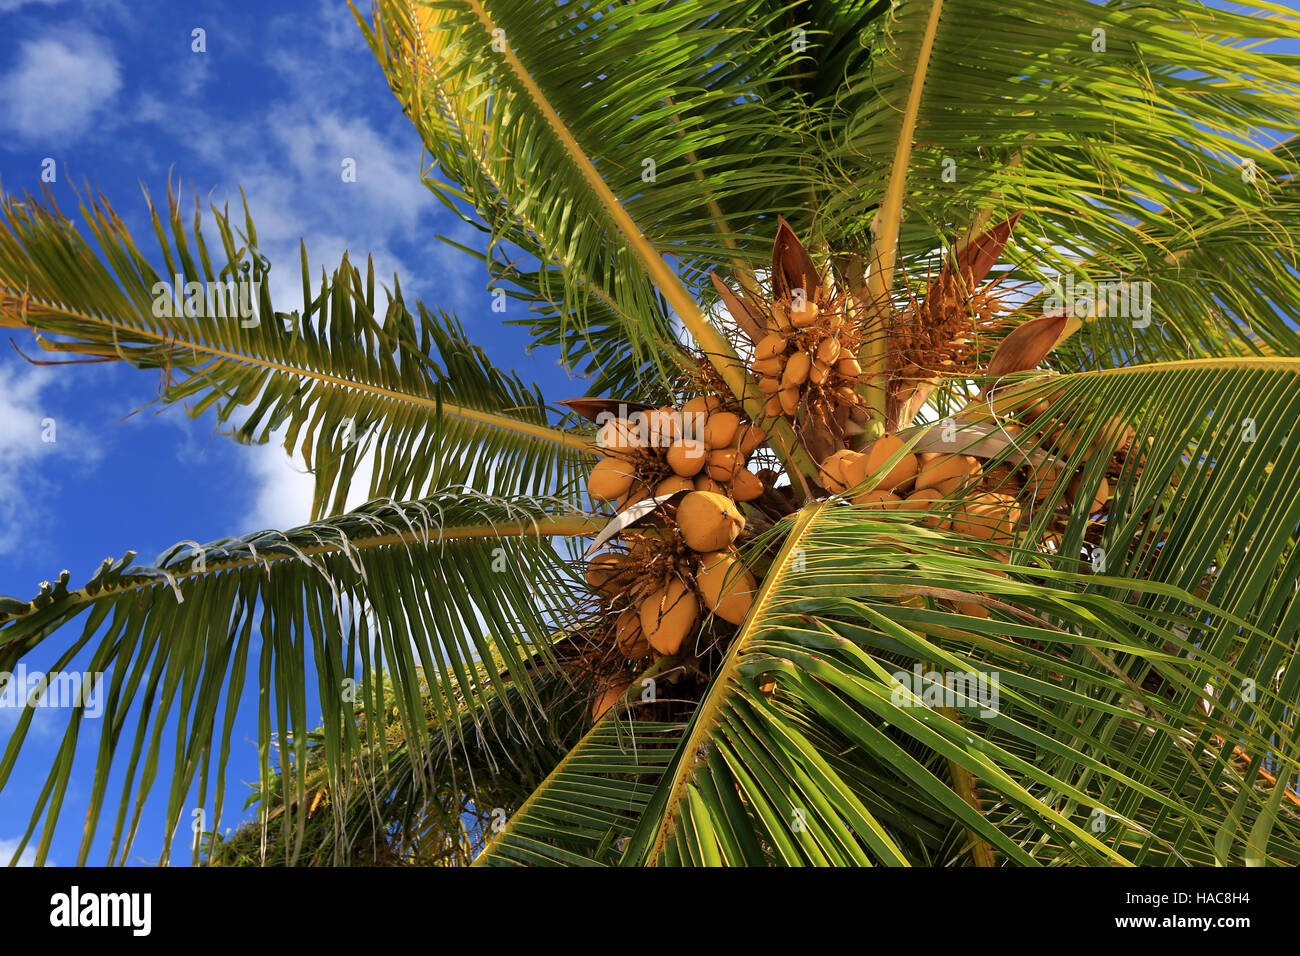 Kokospalme im blauen Himmelshintergrund, Weihnachten (Kiritimati) Insel, Kiribati Stockfoto